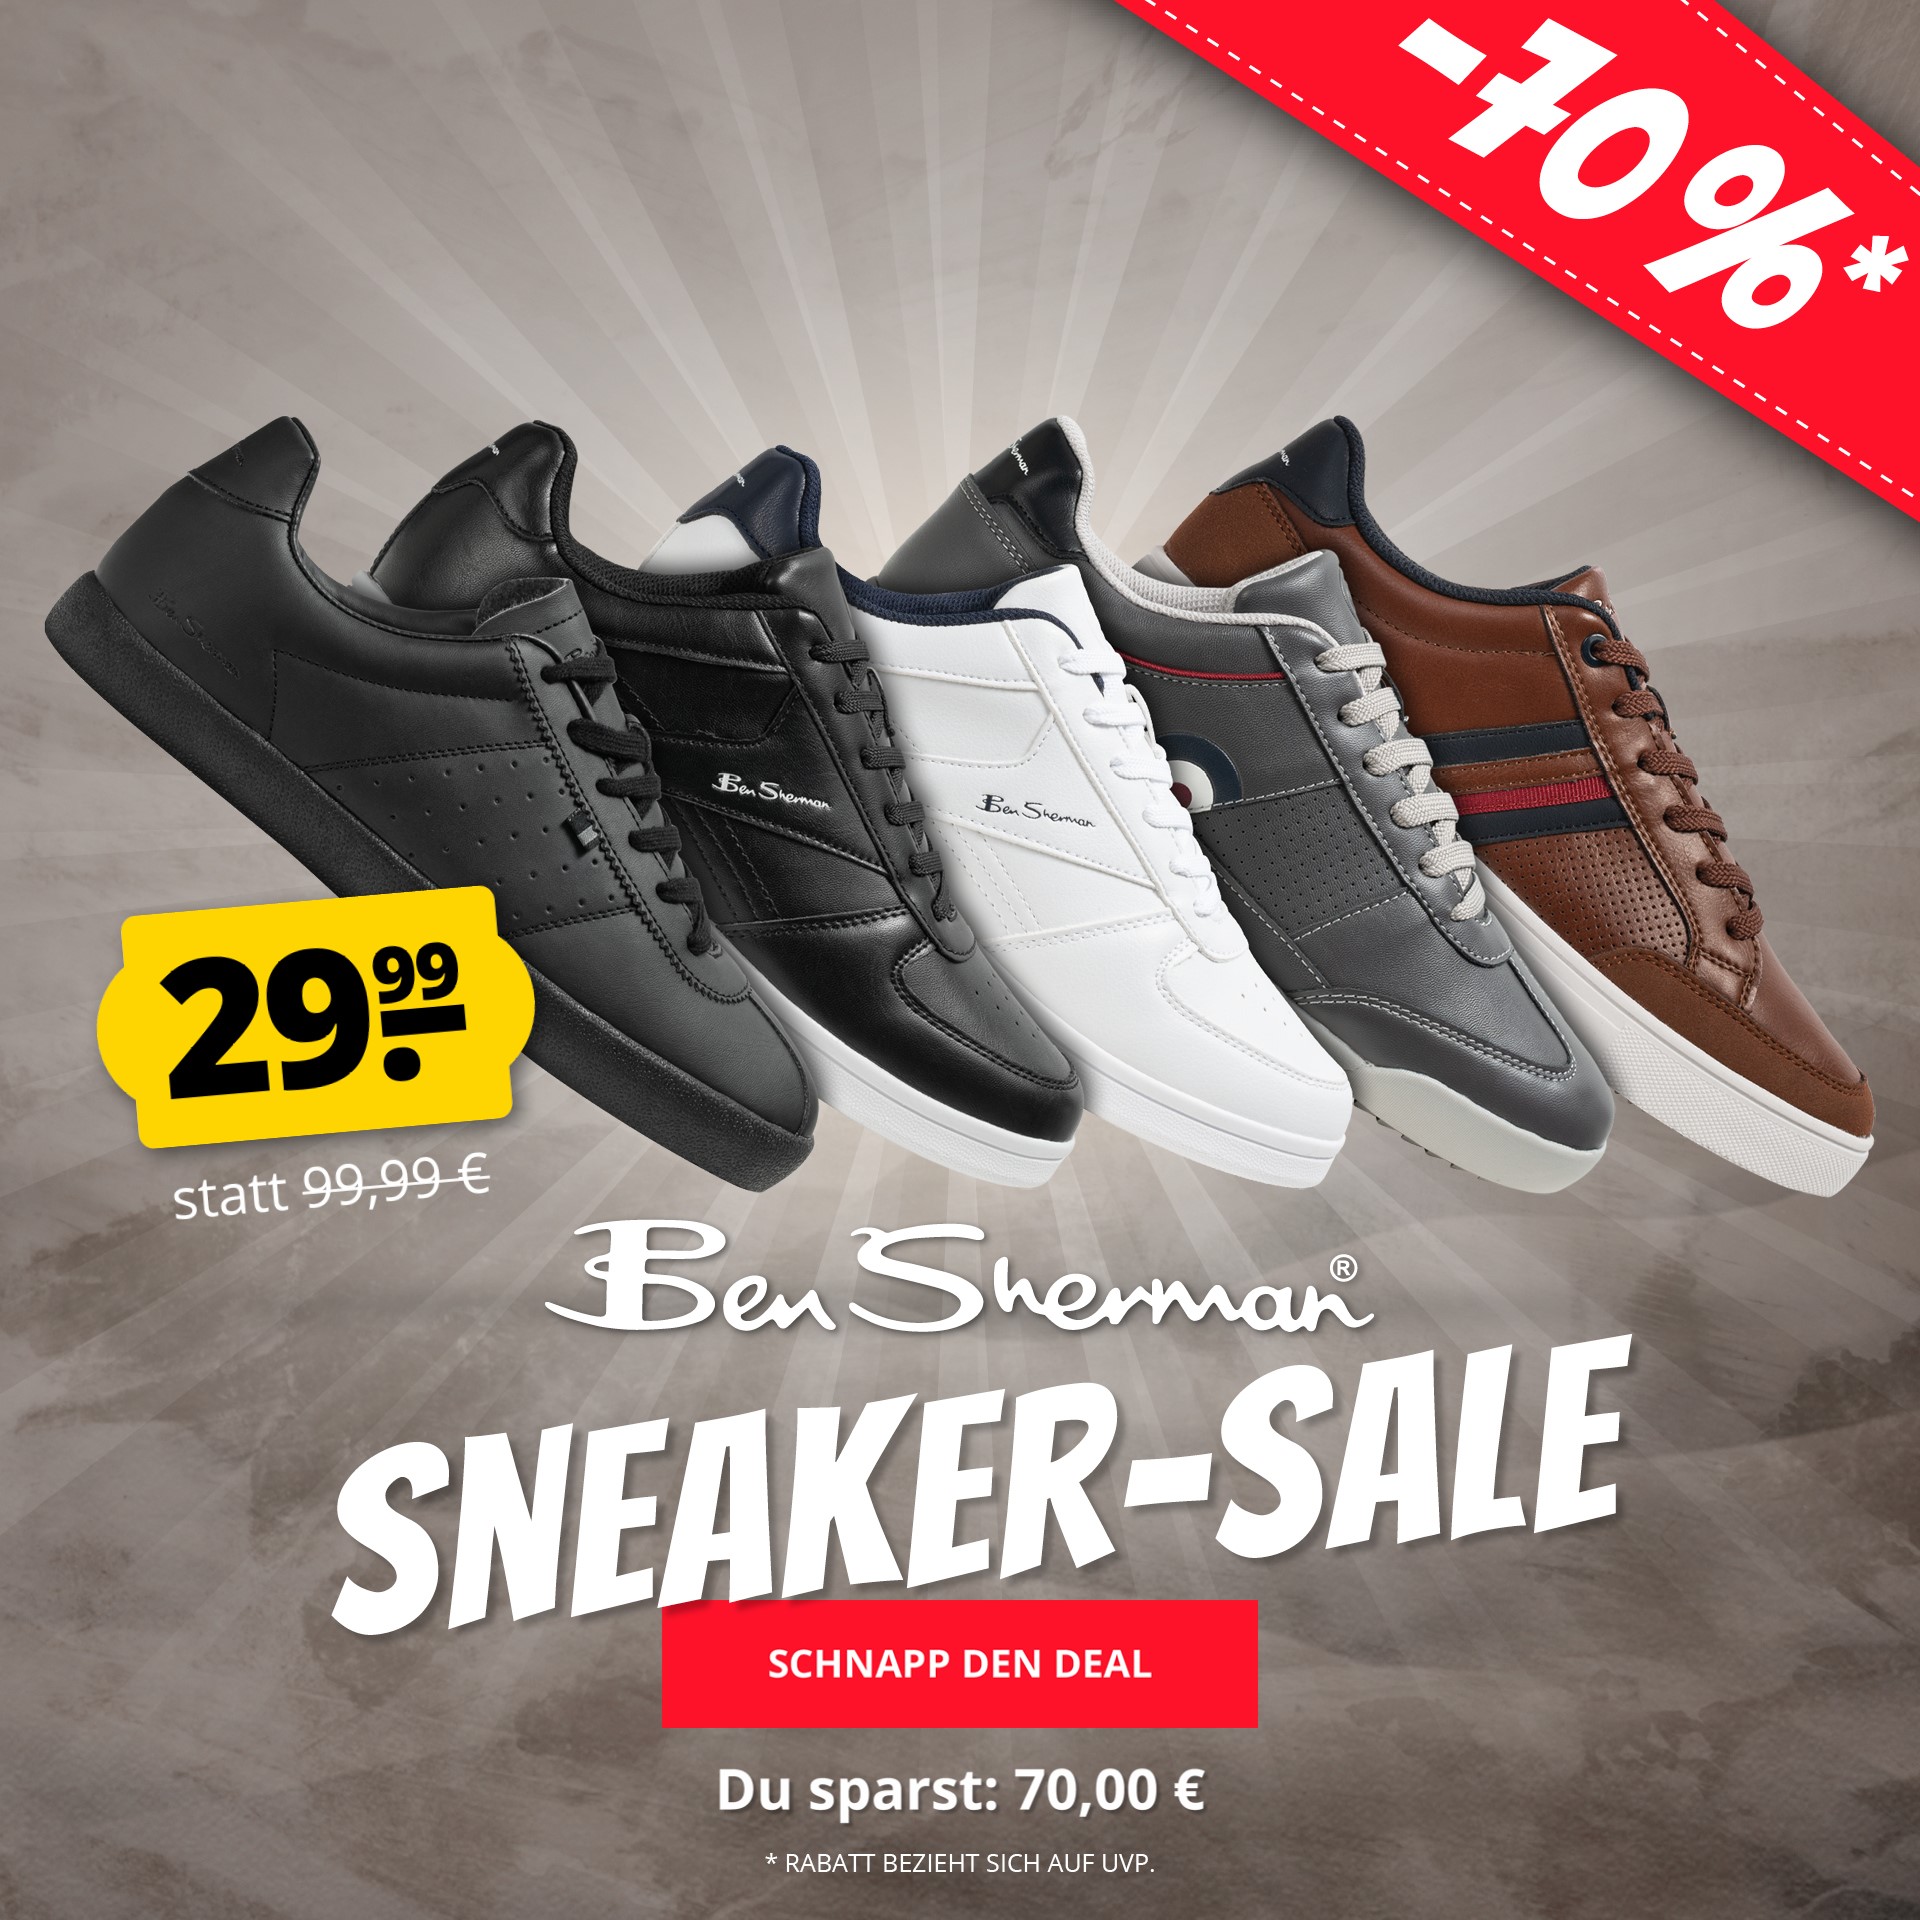 Bild zu Sportspar: Bis zu 70% Rabatt auf verschiedene Ben Sherman Sneaker